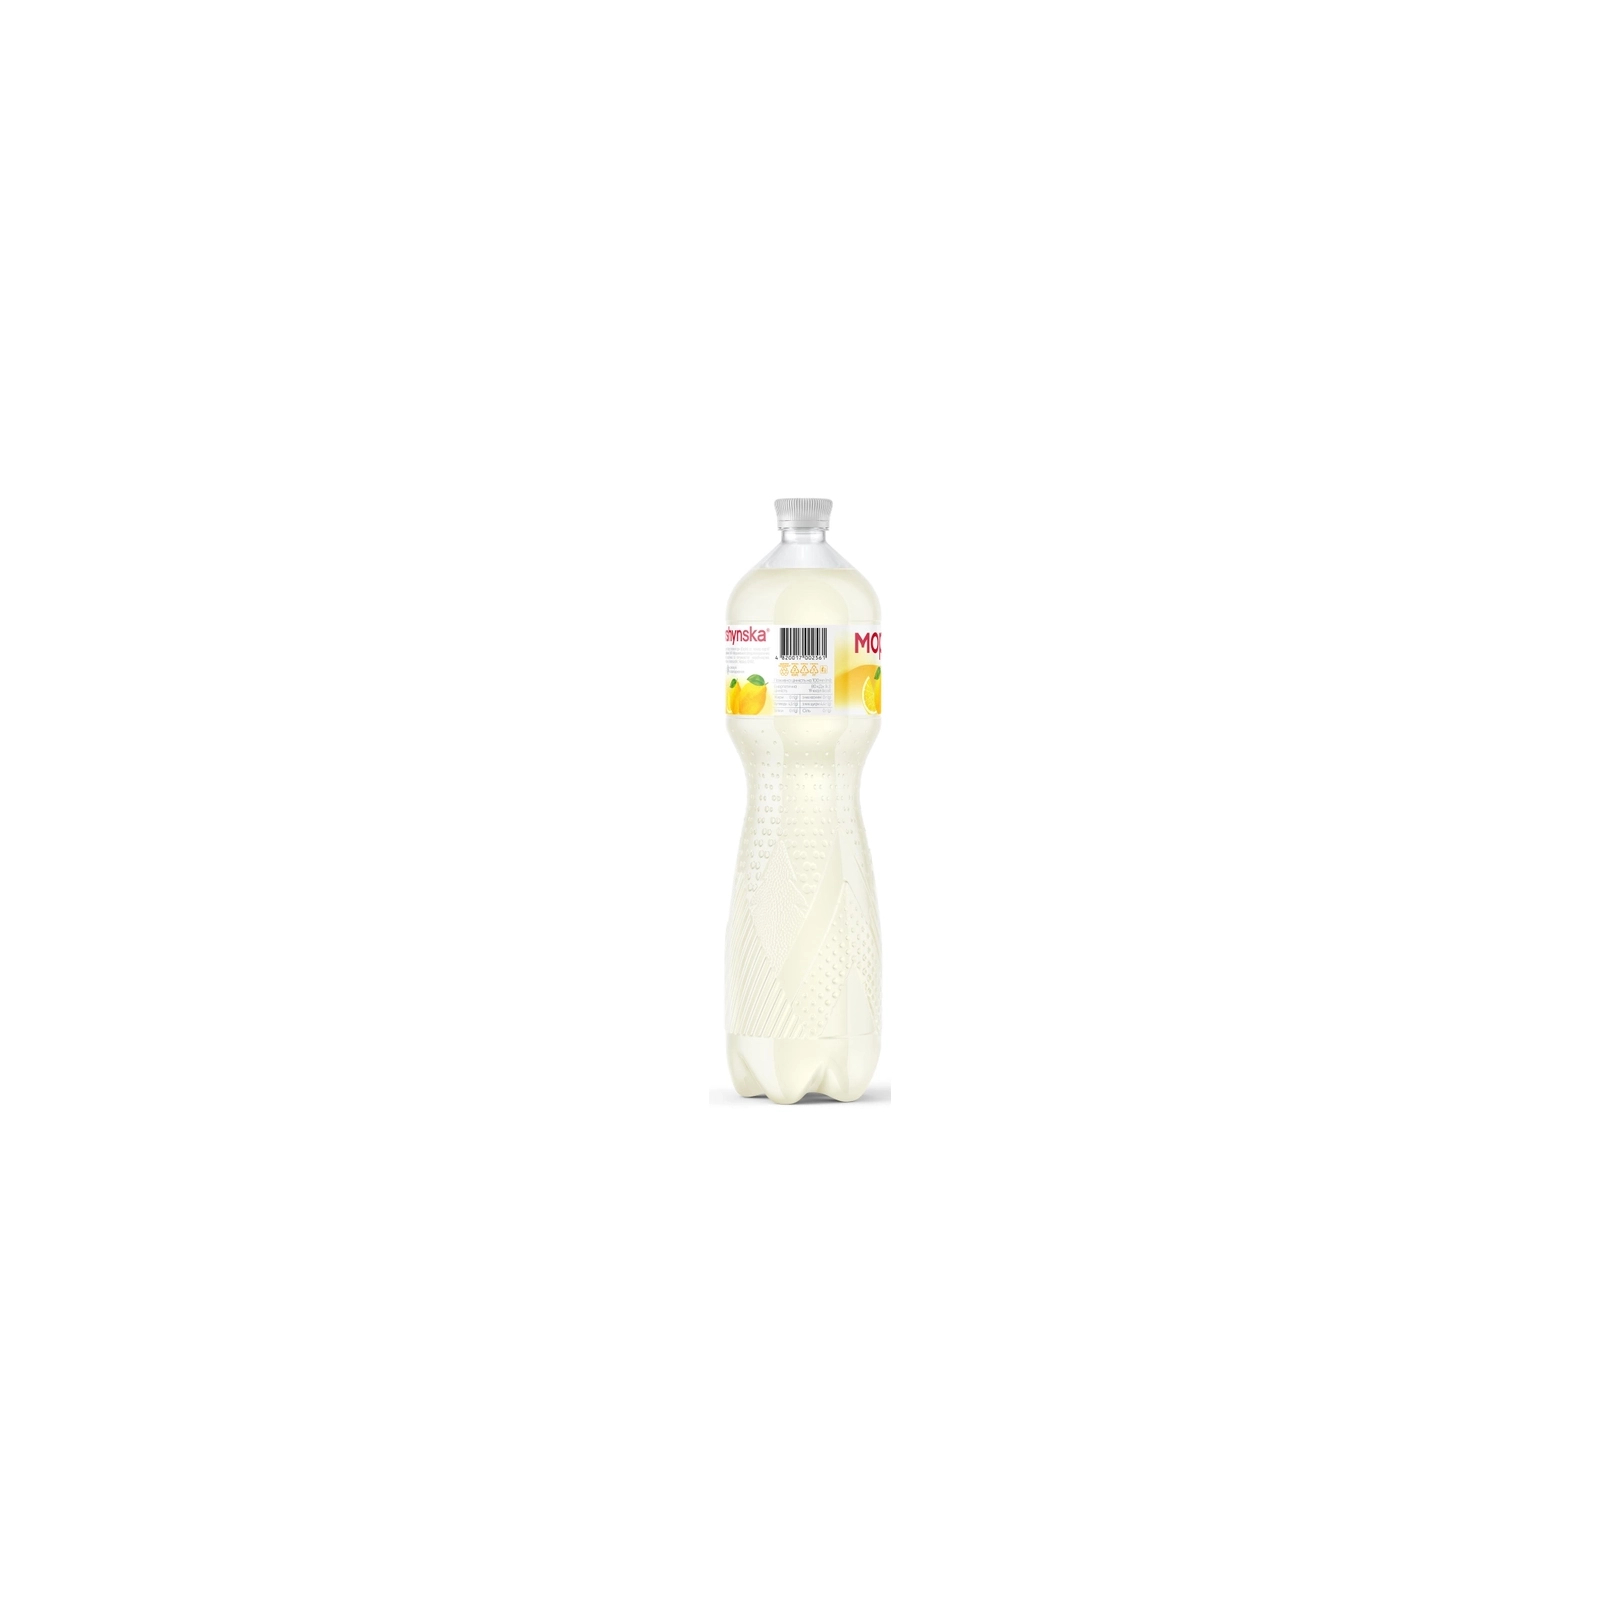 Напиток Моршинська сокосодержащий негазированный со вкусом лимона 1.5 л (4820017002561) изображение 3